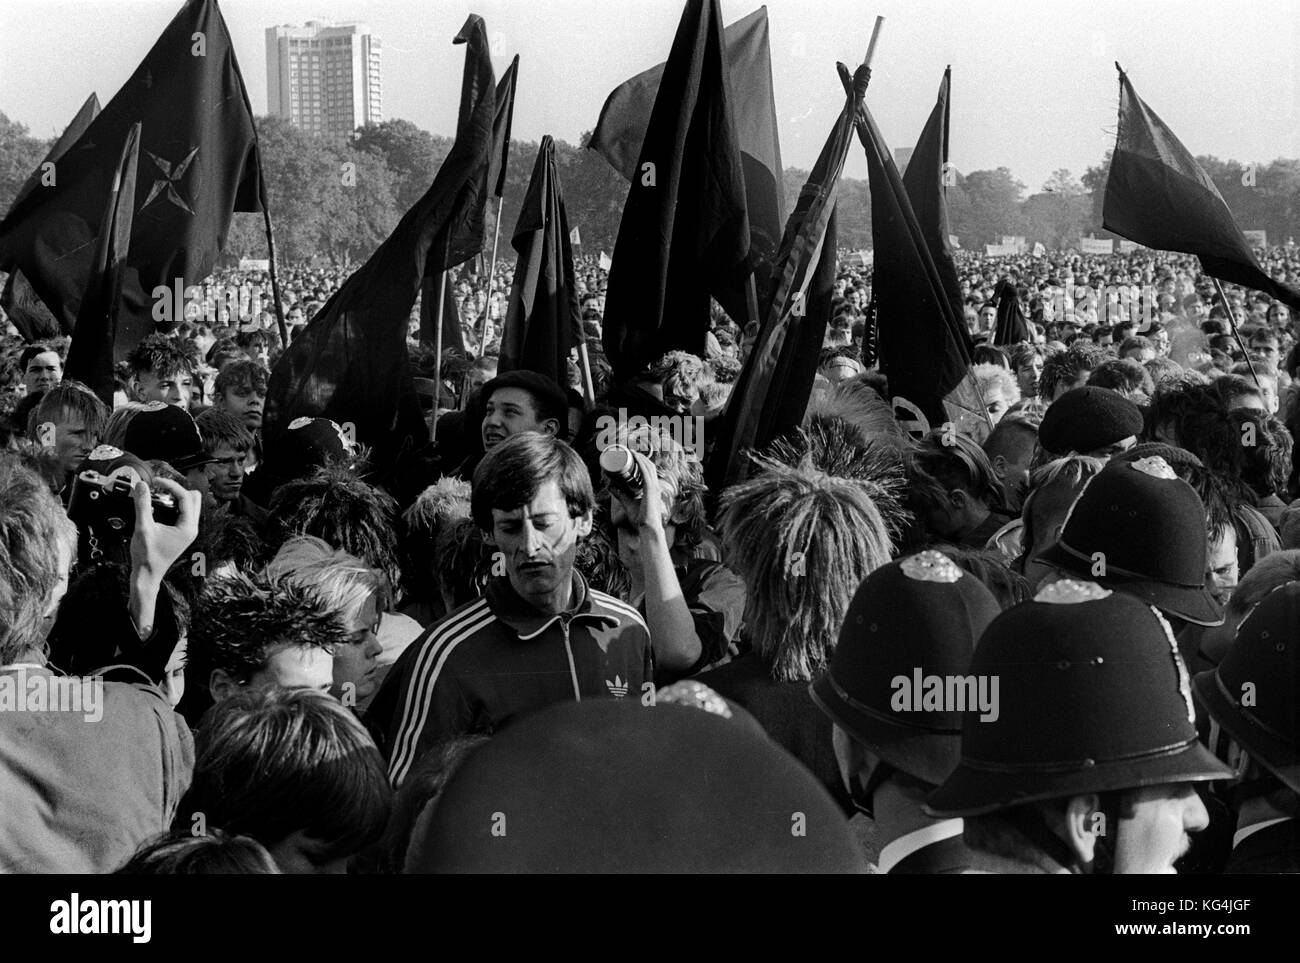 Les anarchistes au CND Campagne pour le désarmement nucléaire manifestation contre les missiles Trident & Croisière à travers Londres cenral en octobre 1984 Banque D'Images